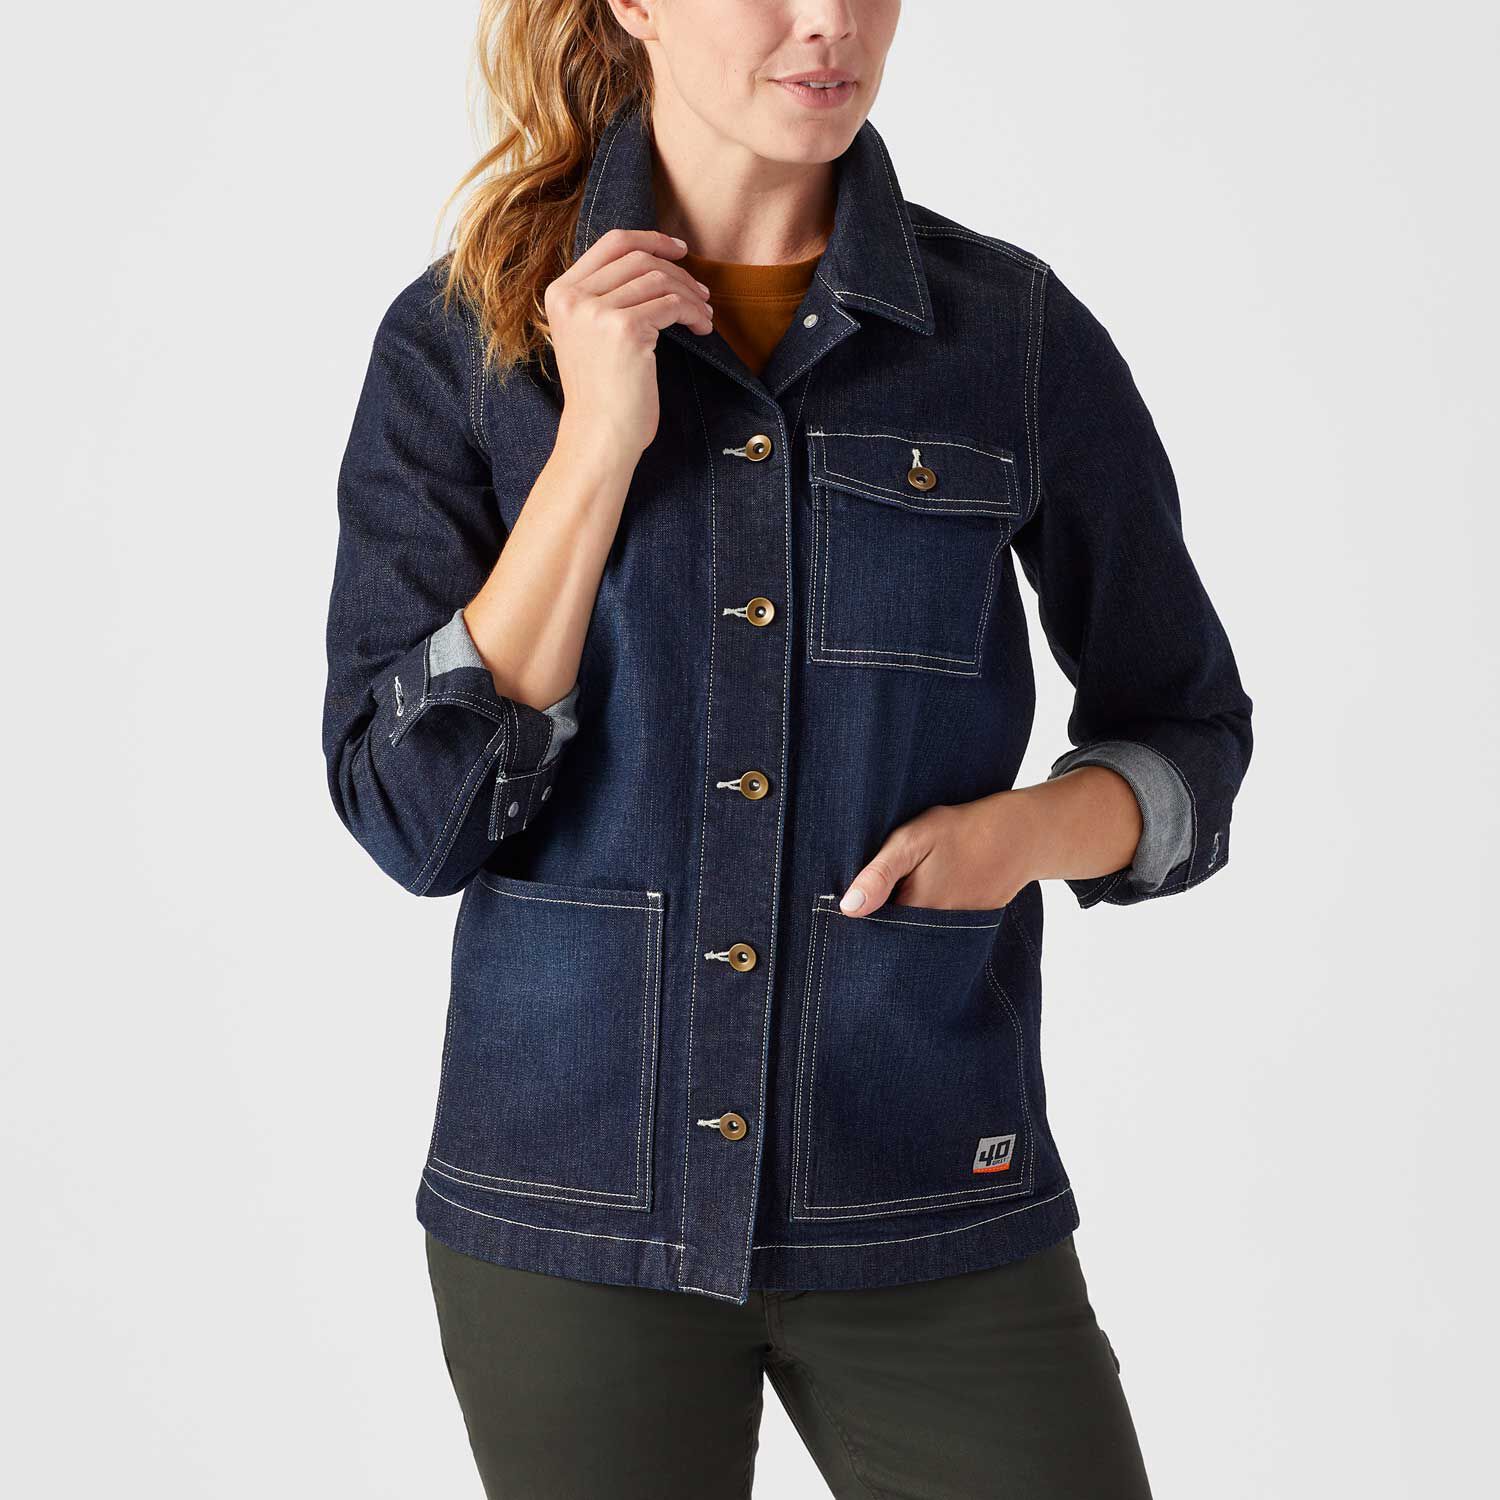 ZW765 - Womens Outdoor Short Sleeve Shirt - Online Workwear